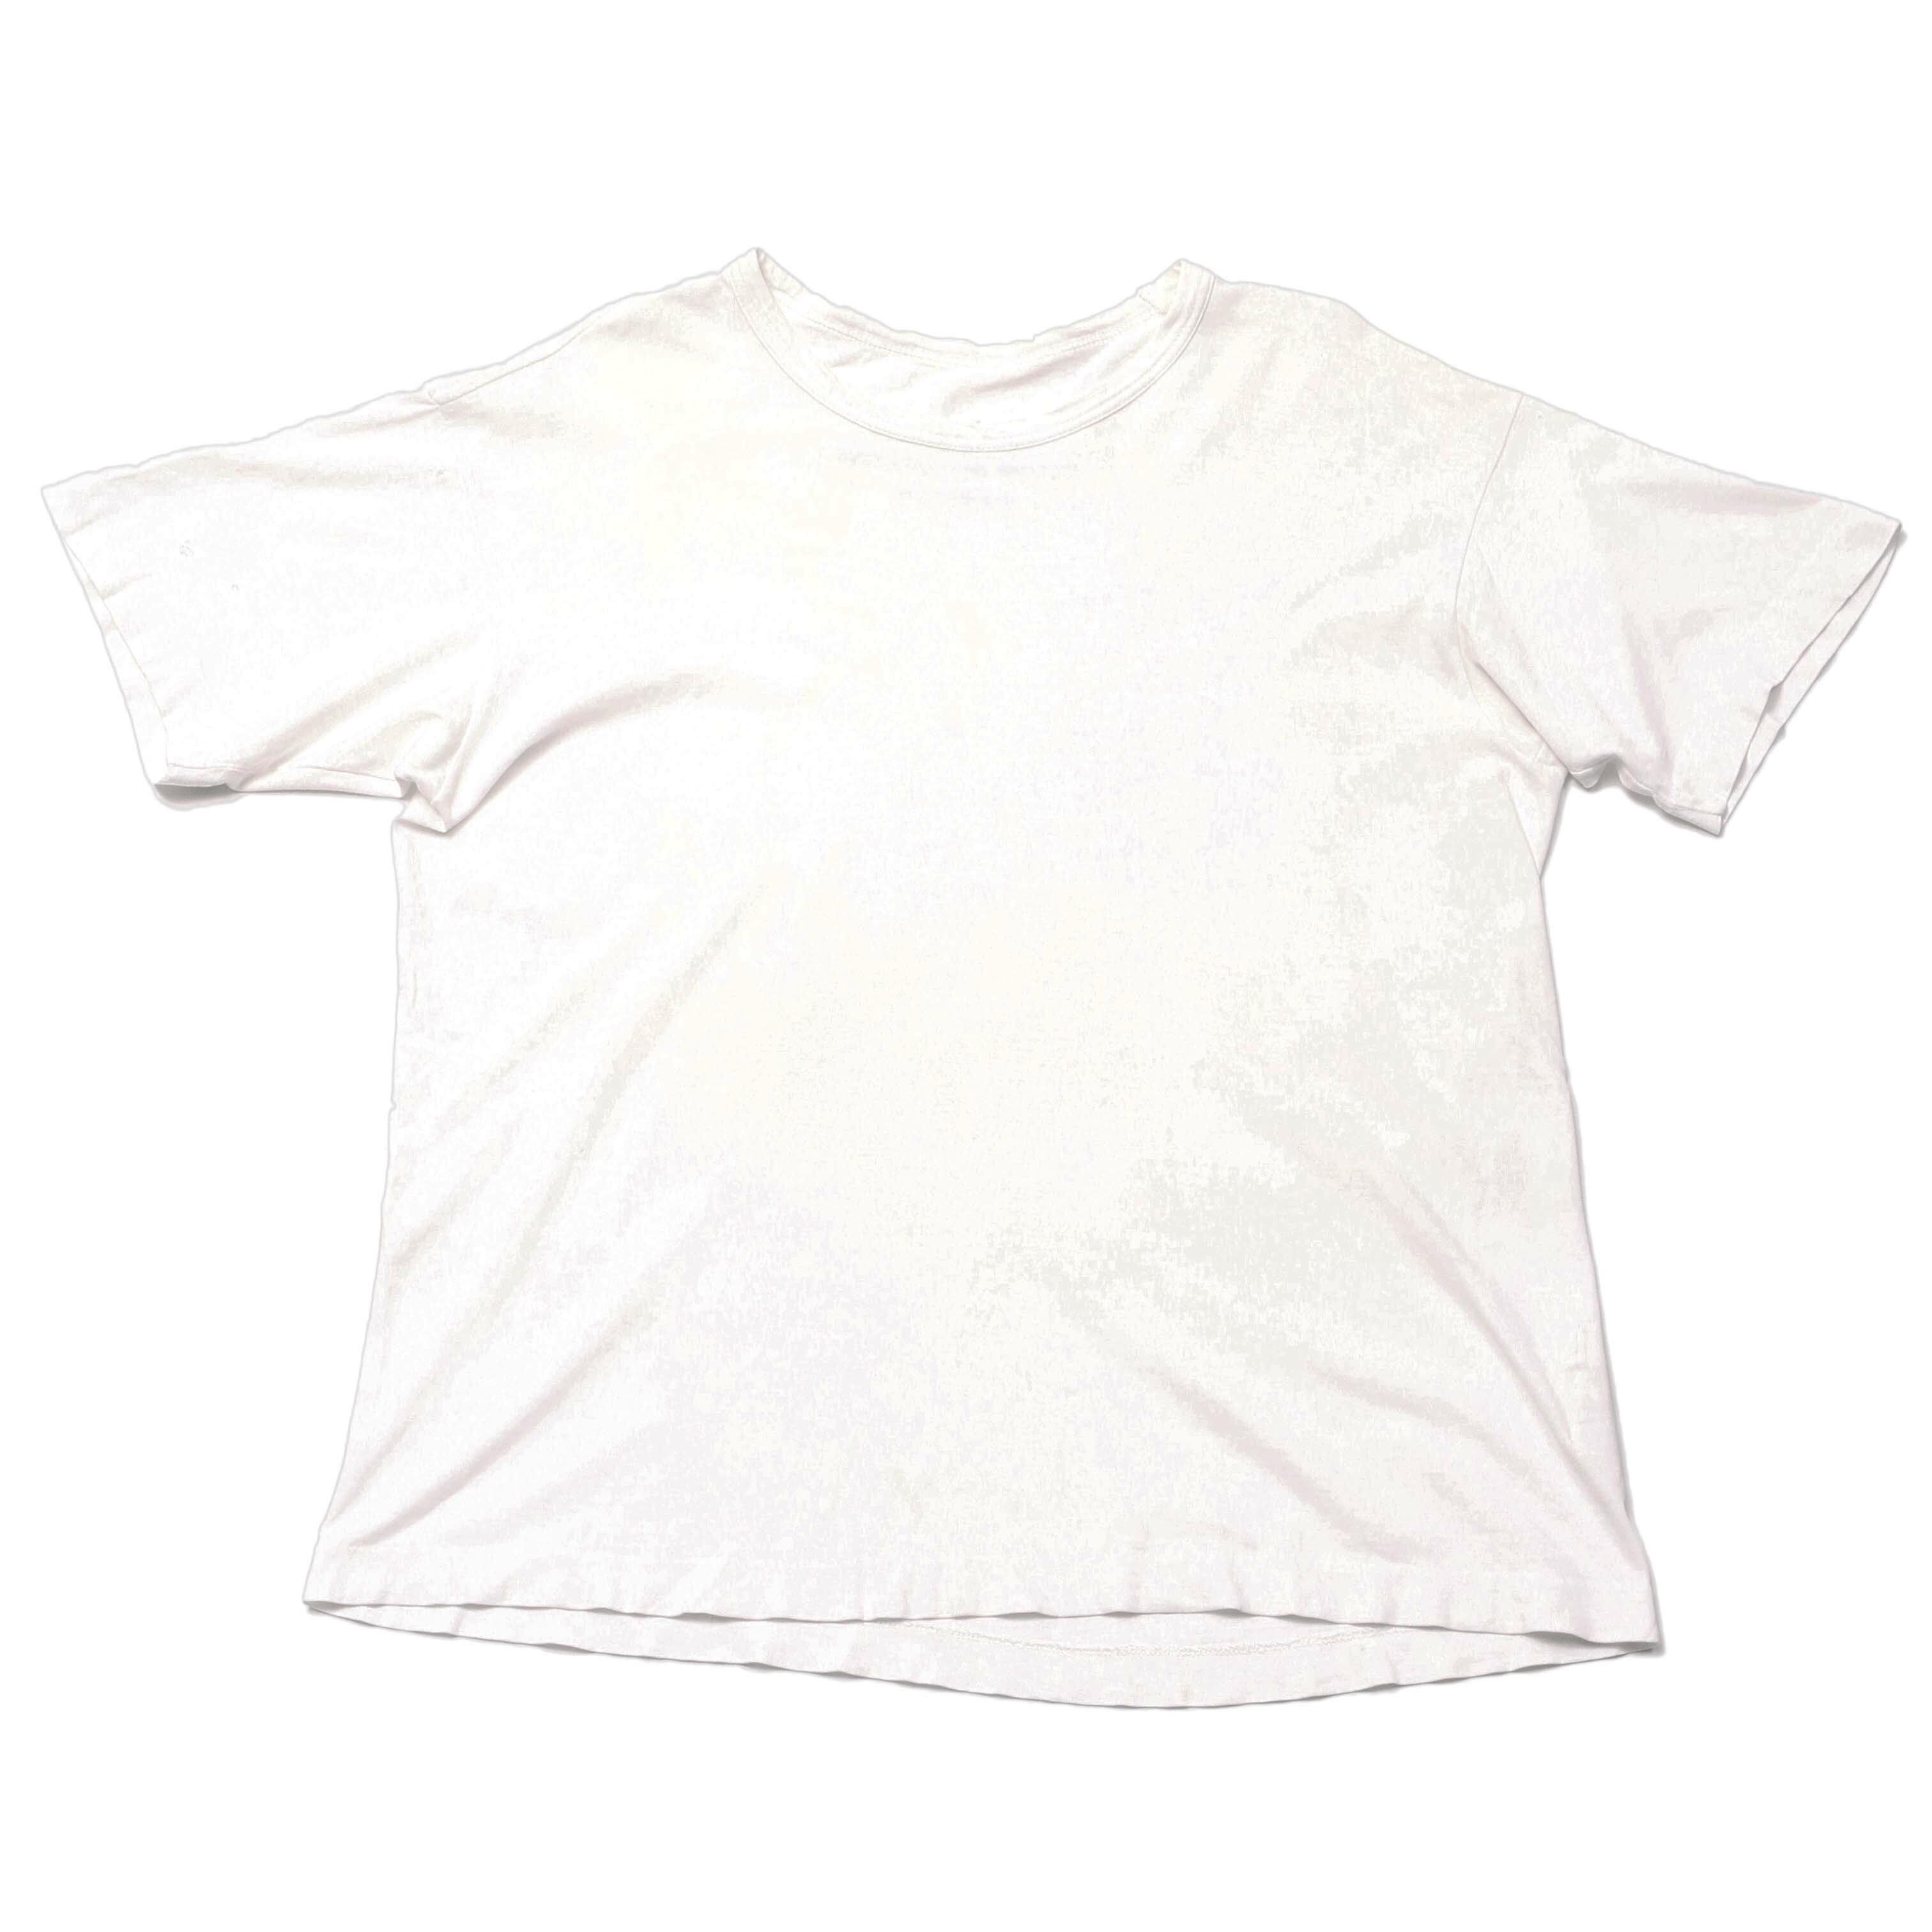 SS85 '1985 été Homme Plus' Cotton T-shirt - 2